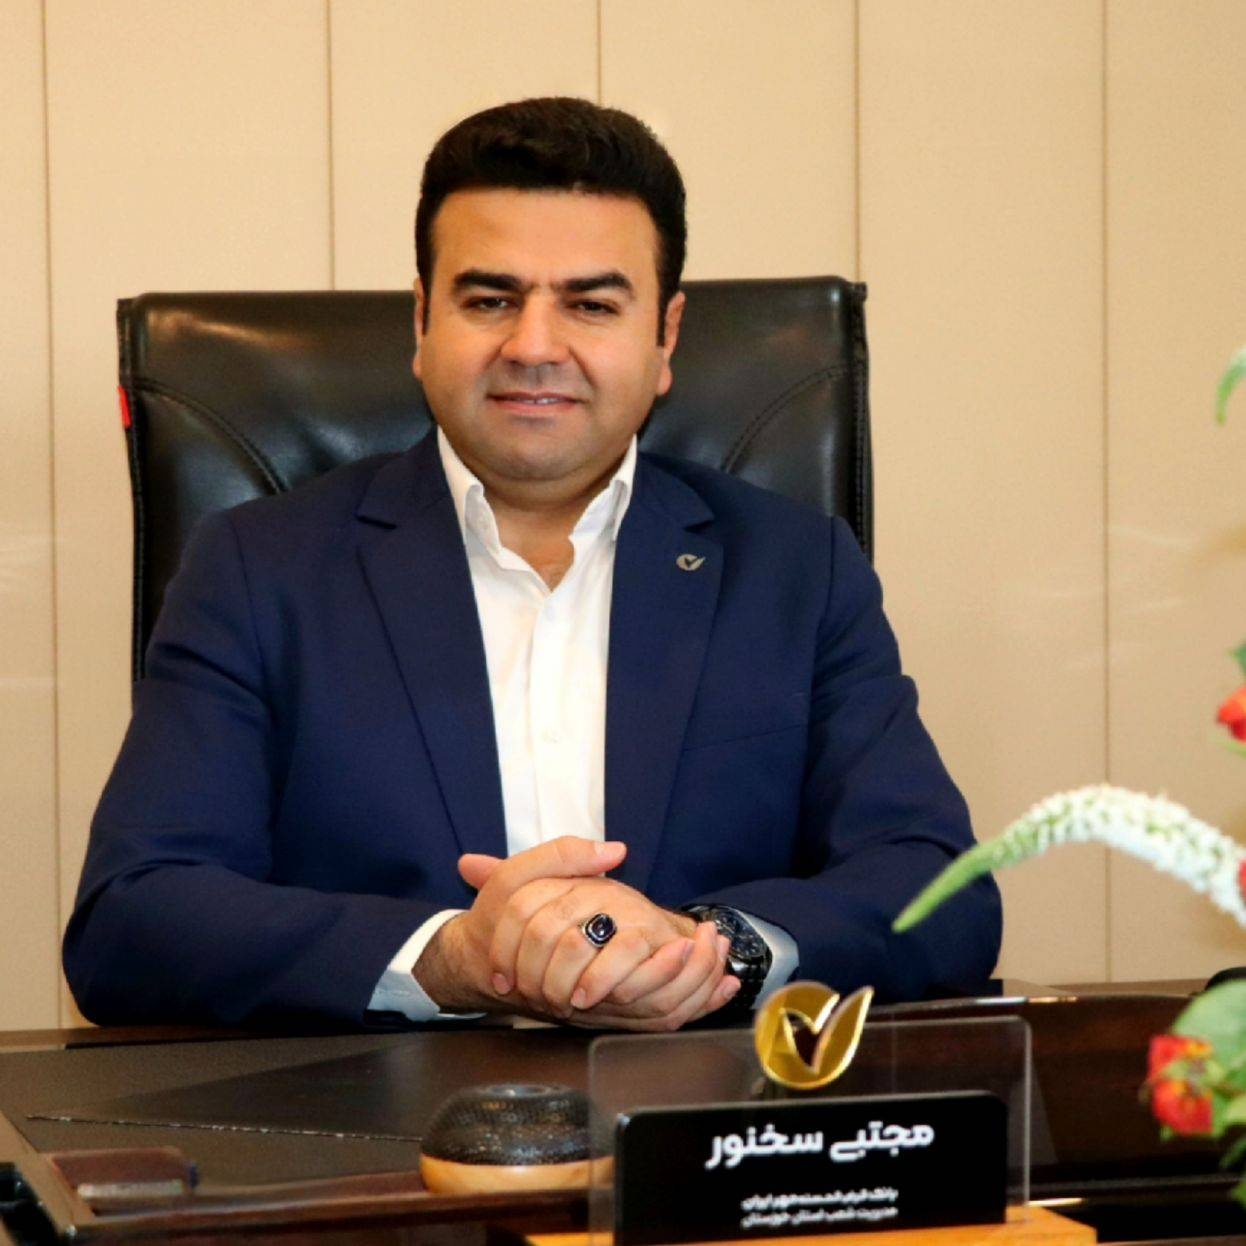 ۶۷ درصد تسهیلات بانک قرض الحسنه مهر خوزستان بصورت آنلاین پرداخت شد